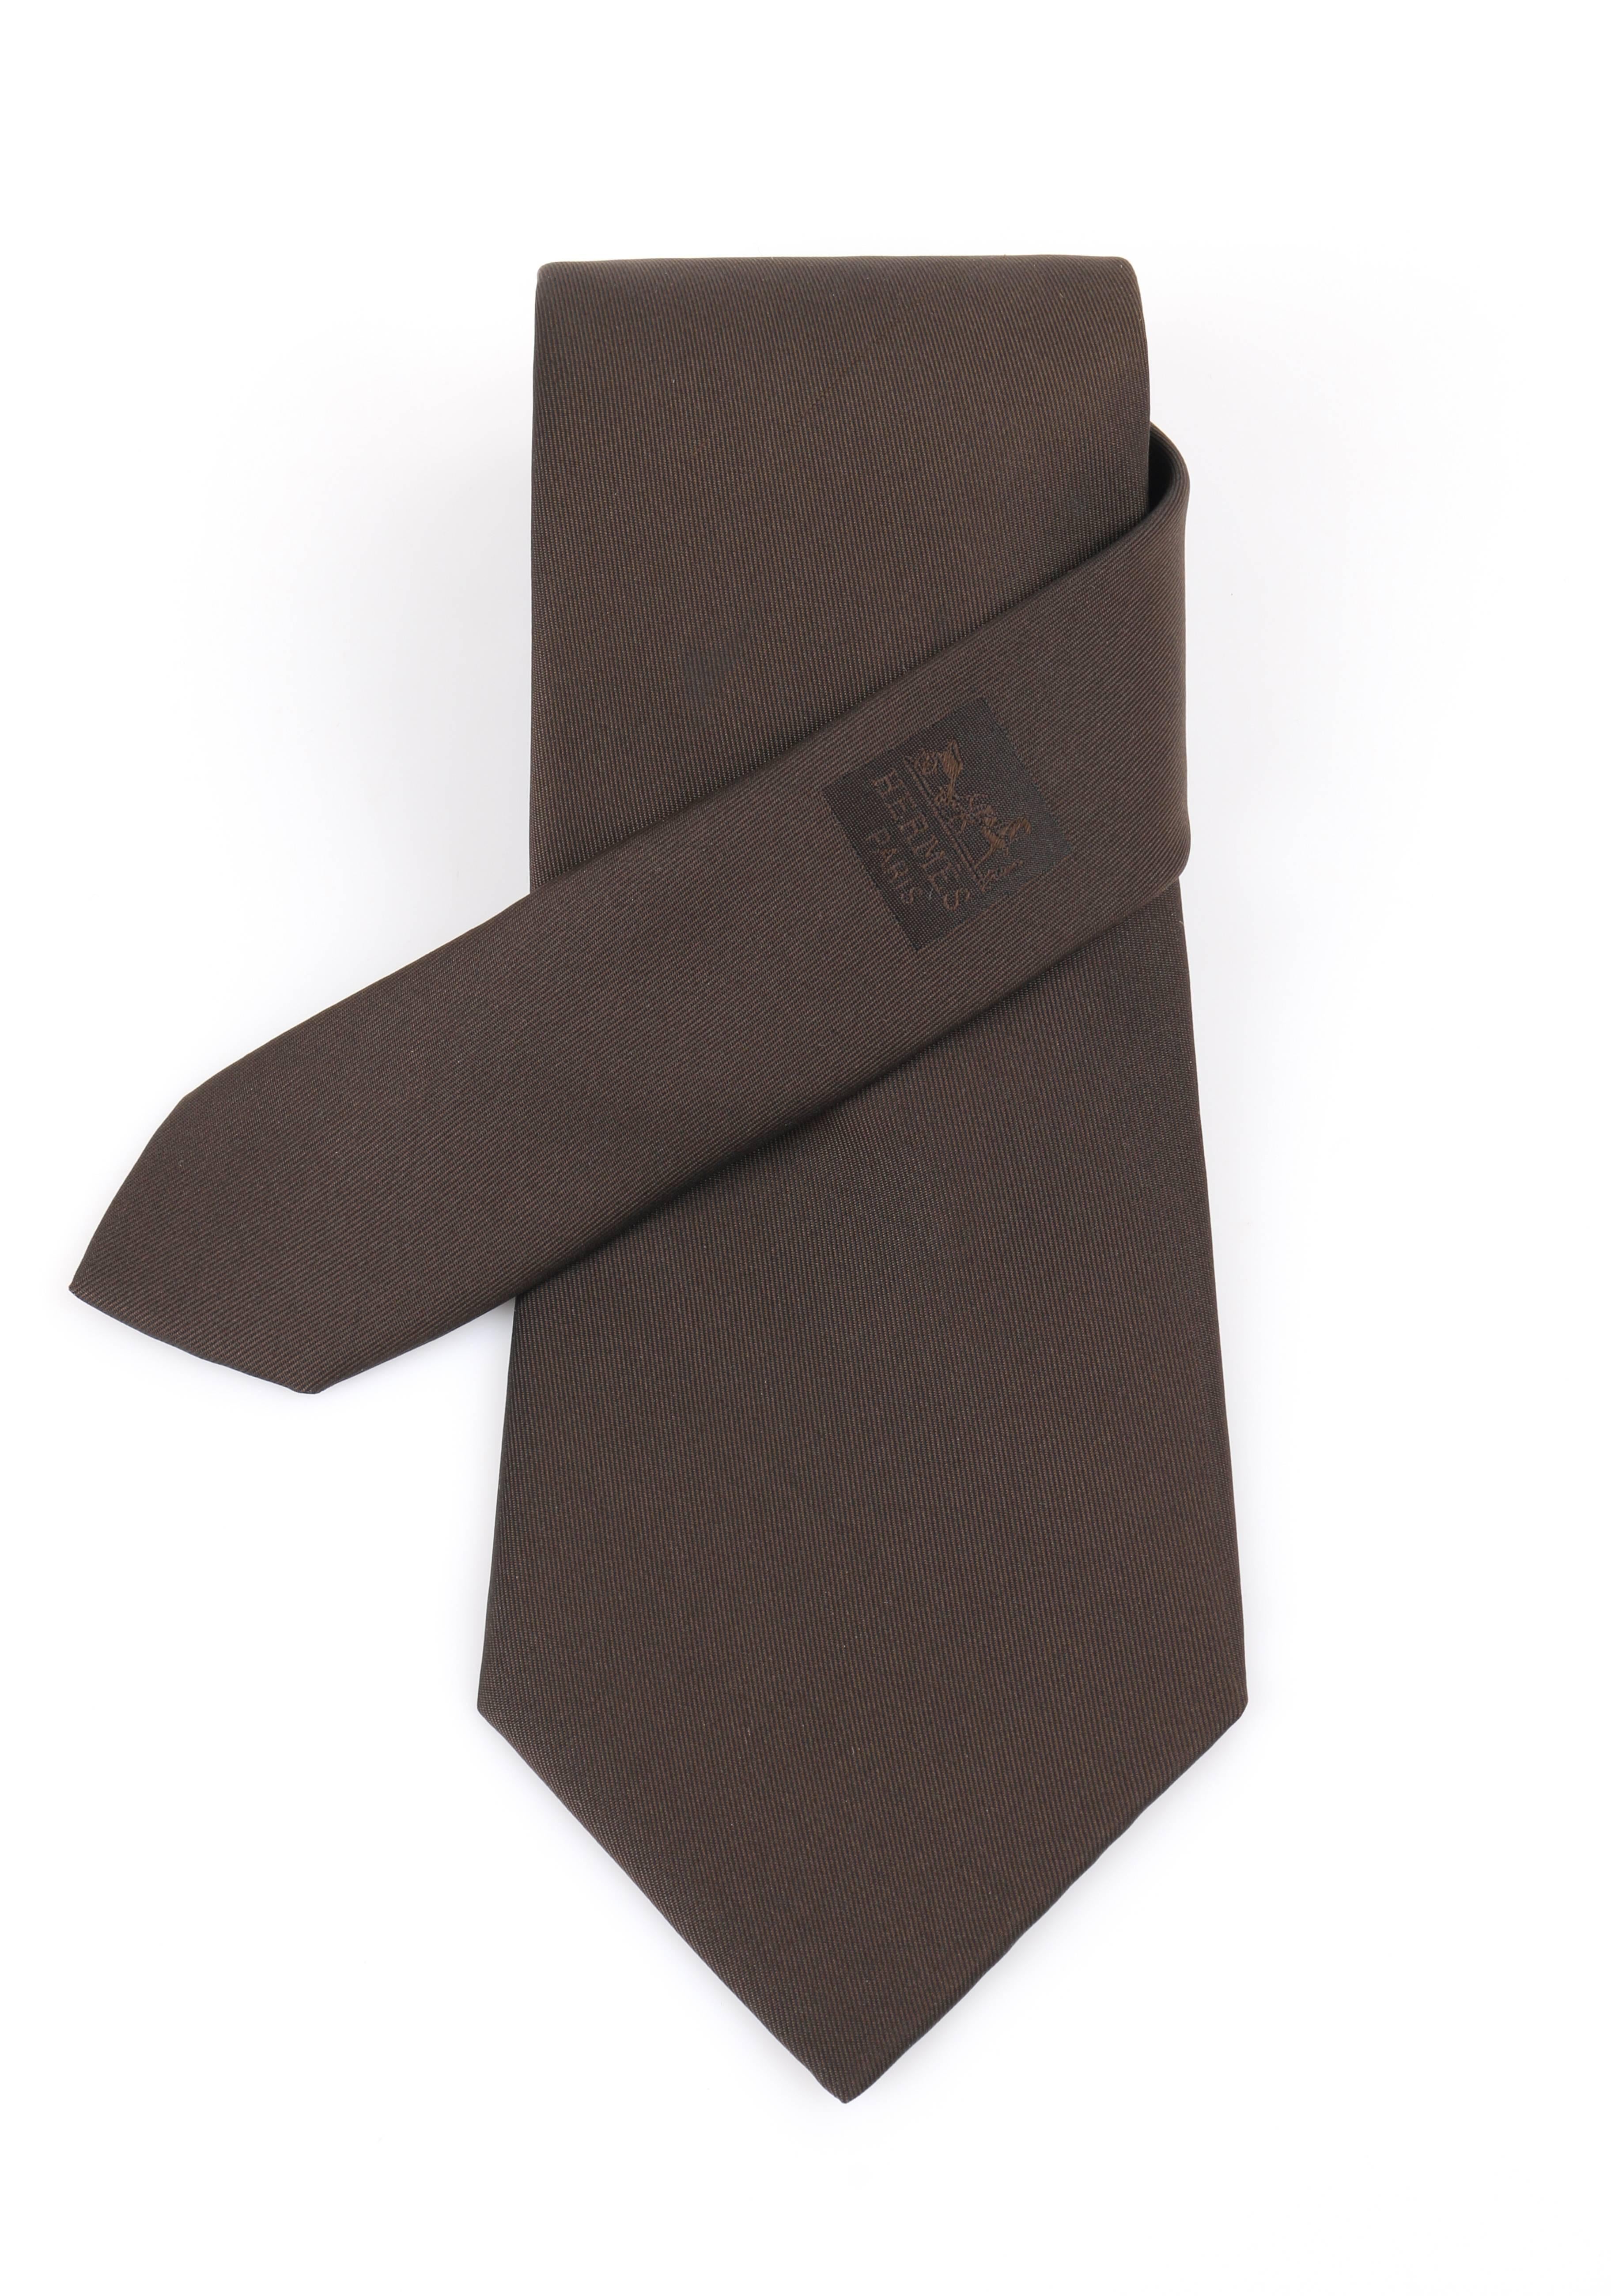 Hermes Paris sold dark brown silk five fold necktie. Solid dark brown silk body. 